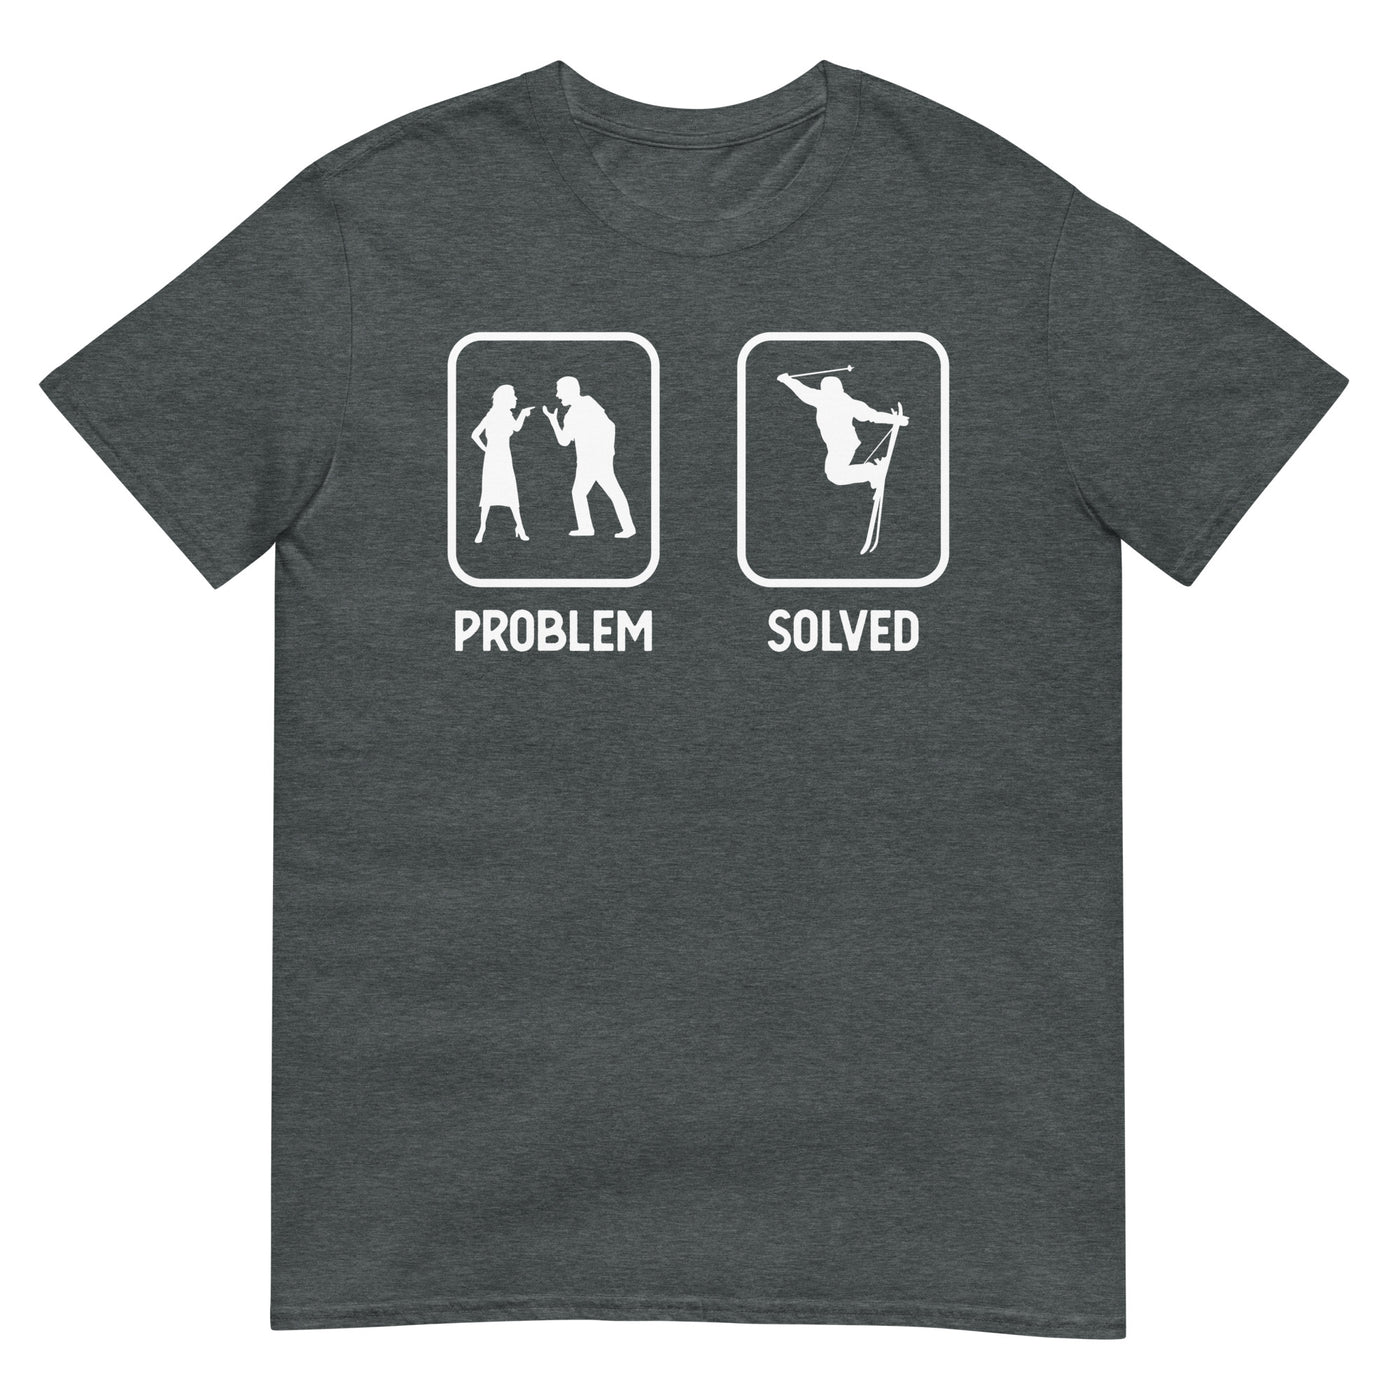 Problem Solved - Mann Skifahren - T-Shirt (Unisex) klettern ski xxx yyy zzz Dark Heather